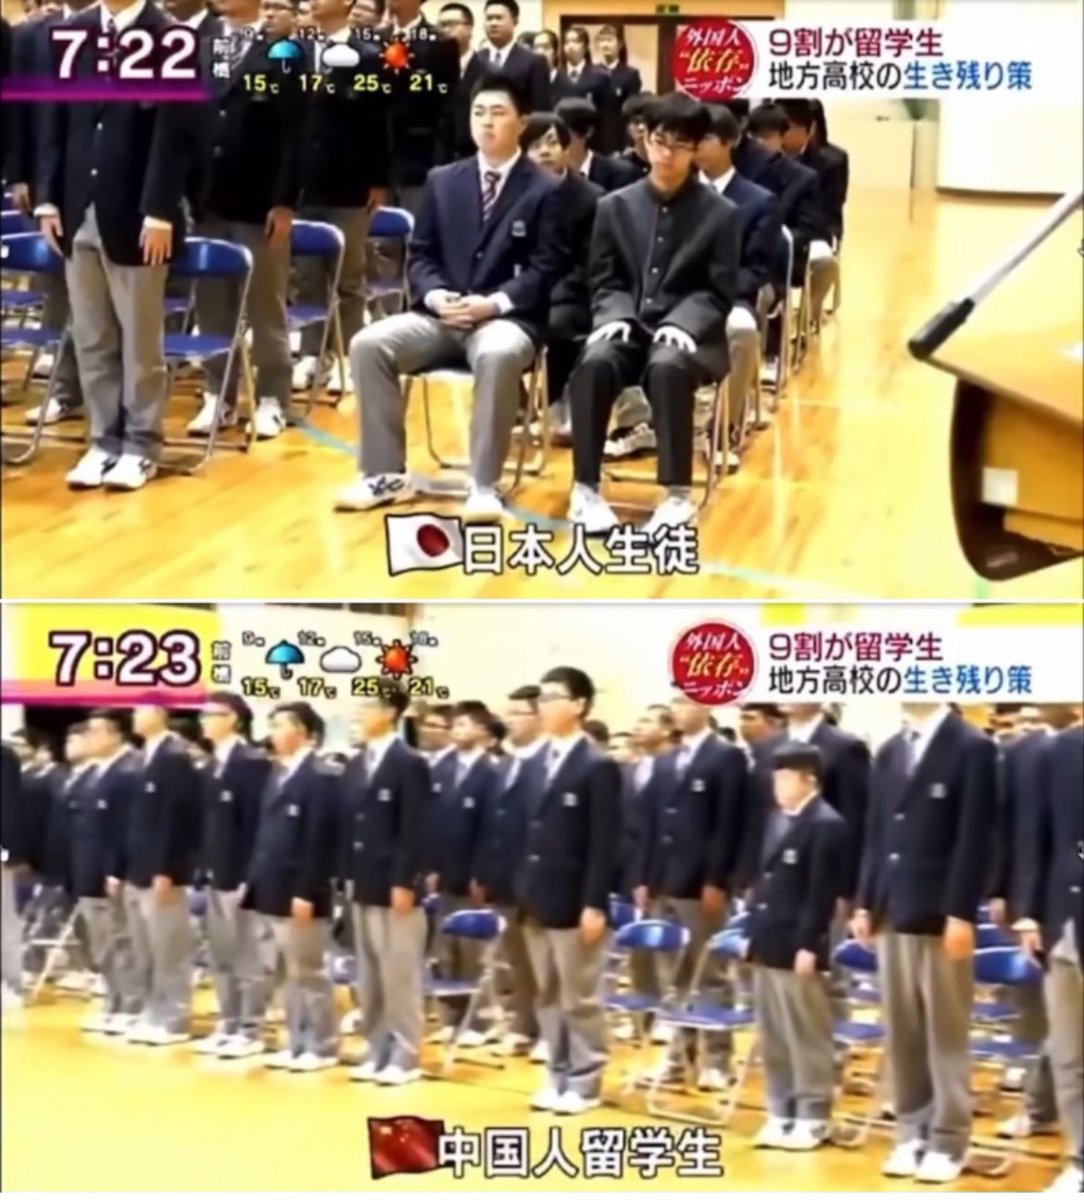 宮崎のある高校の入学式では中国人生徒167名に対し日本人生16名。

入学式には中国の校歌を歌い中国語で挨拶。

これが自民党が目指す共生社会なのか？
これは数年前の映像ですがその流れはどんどん進みます。

> 中国に乗っ取られた日本の高校。日本人1割
mag2.com/p/news/434719